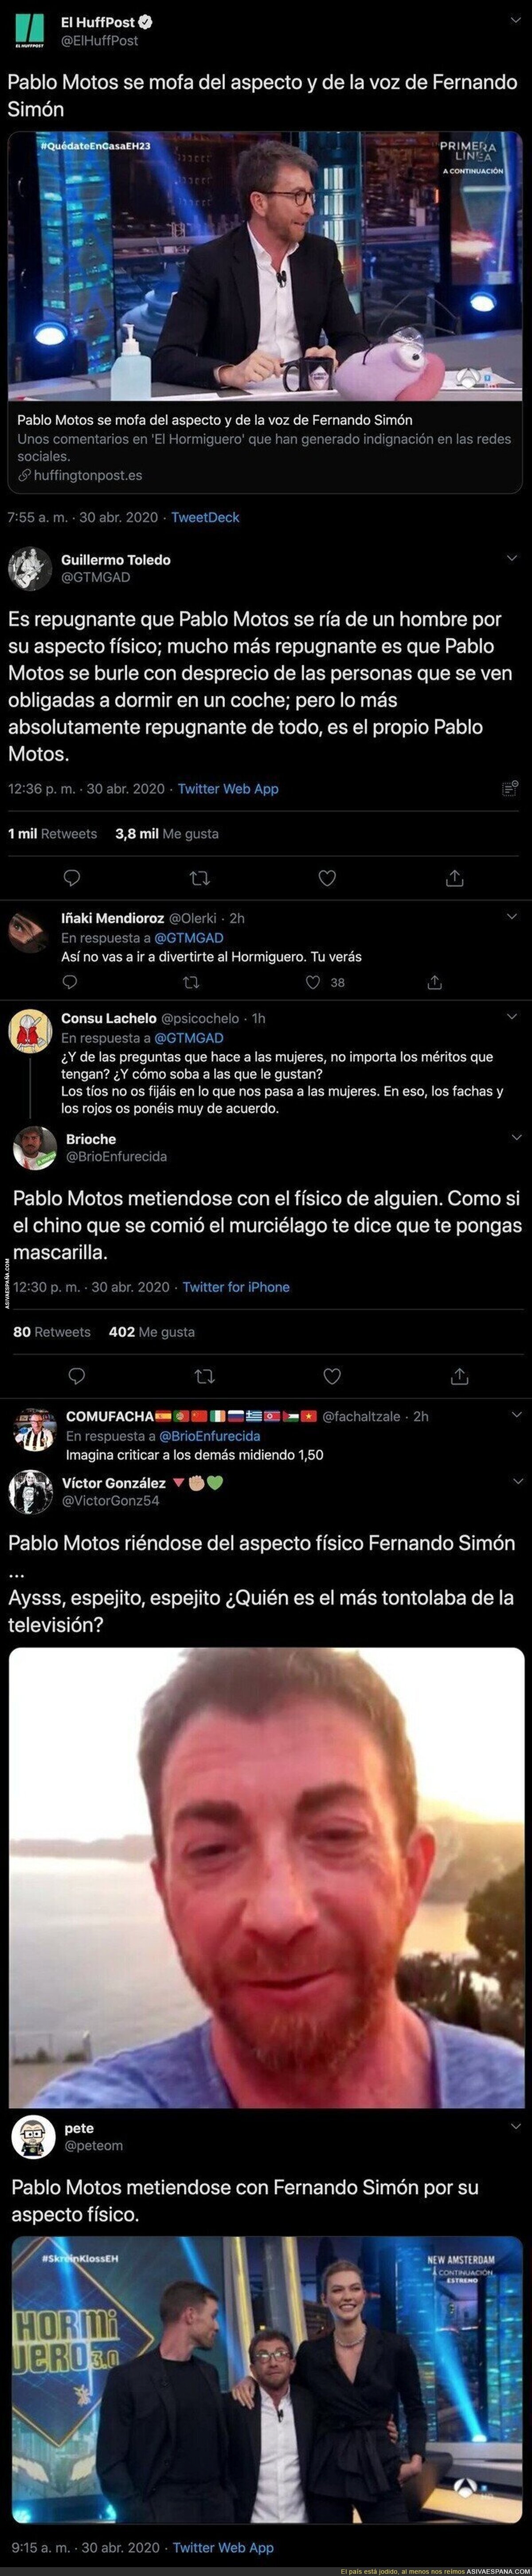 Todo el mundo está respondiendo con dureza a Pablo Motos tras meterse con el físico de Fernando Simón